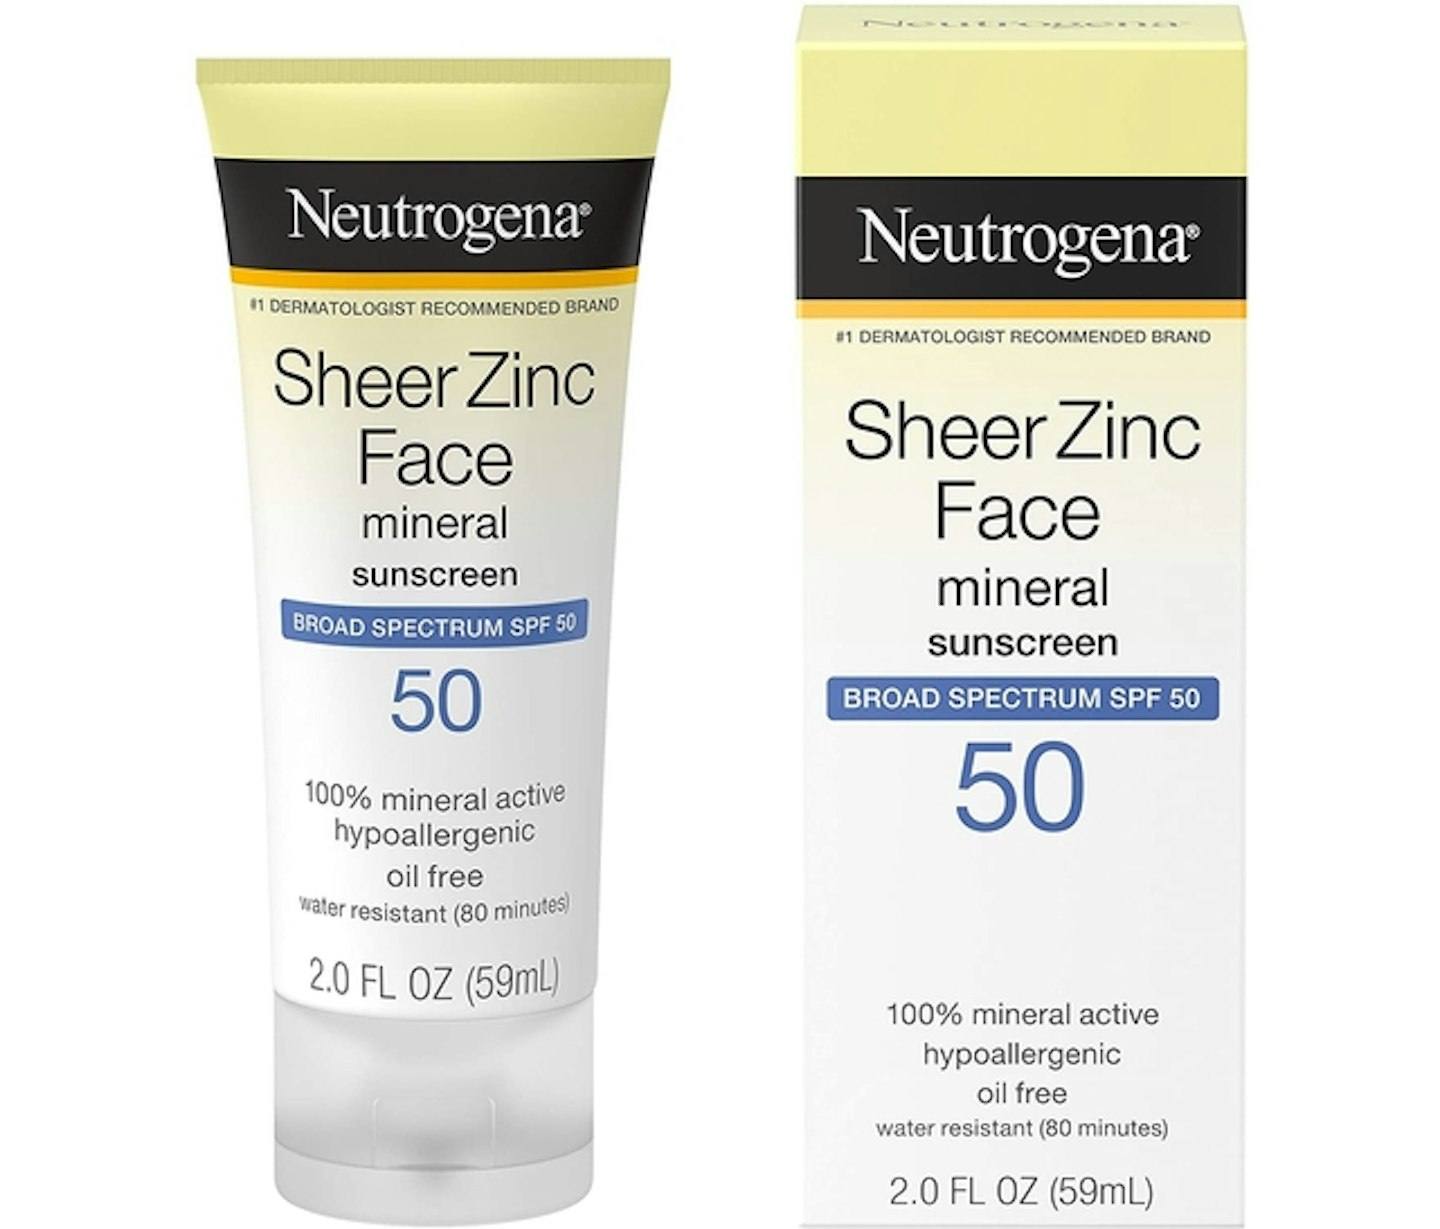 Neutrogena Sheer Zinc Face Dry-Touch Sunscreen